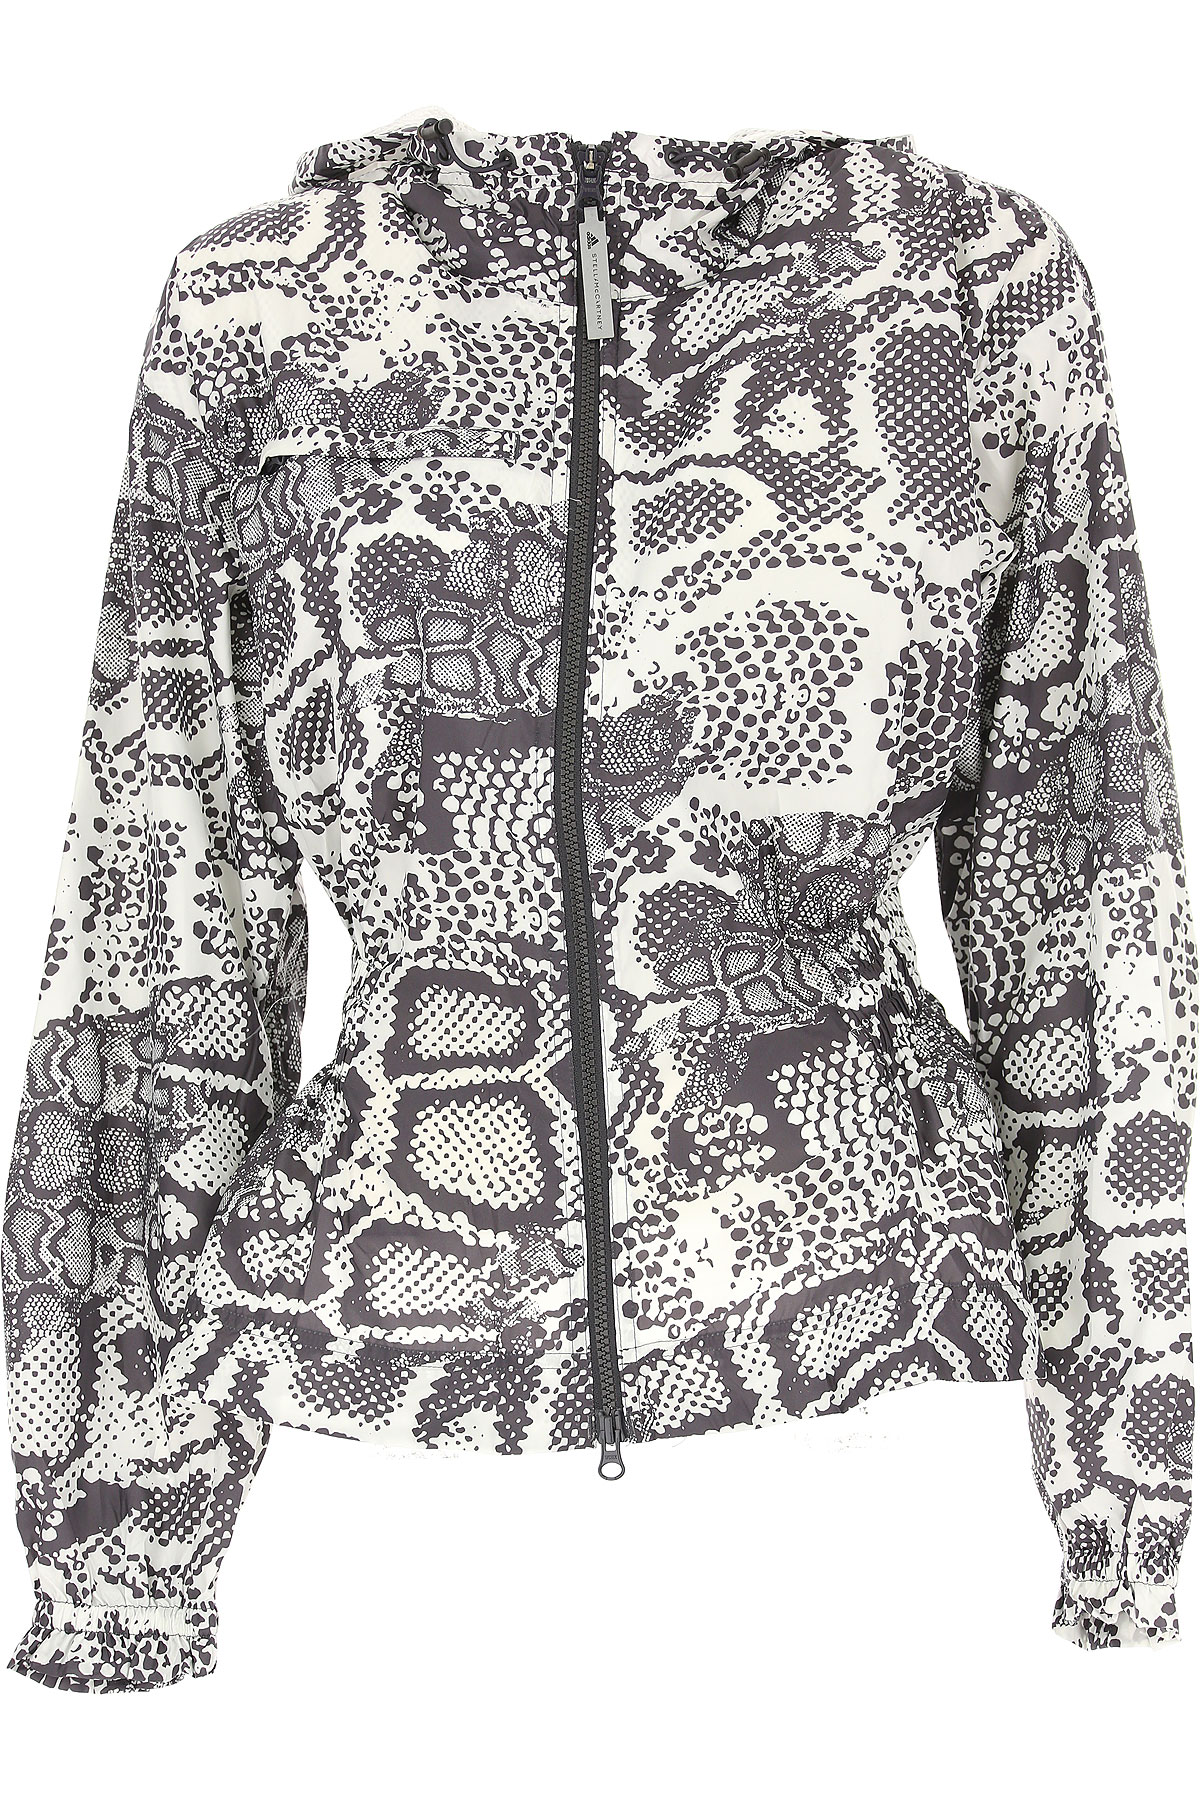 Adidas Jacke für Damen Günstig im Outlet Sale, Weiss, Polyester Recycled, 2017, 38 40